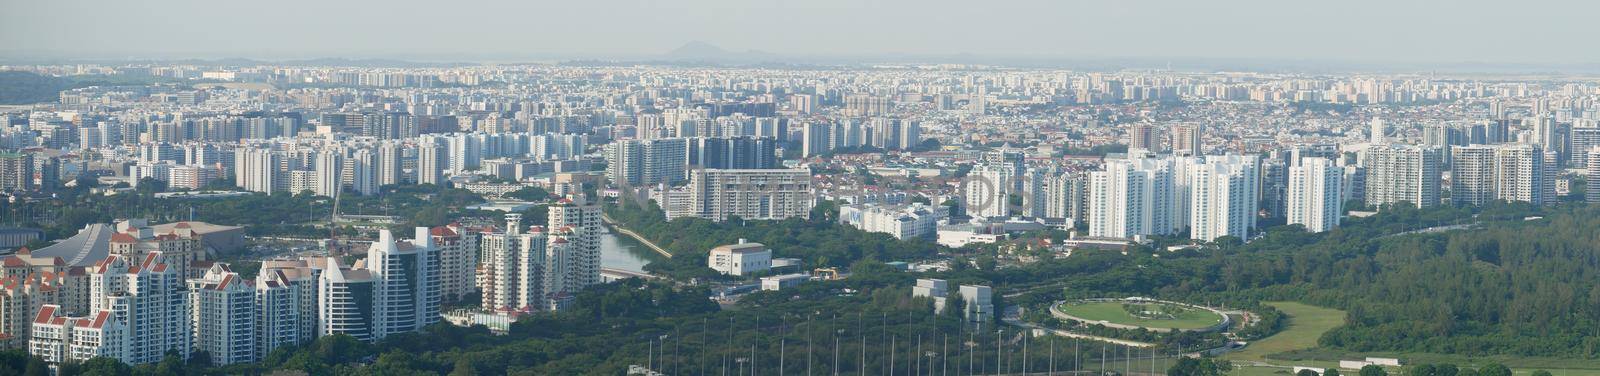 panorama view of of singapore city buildings.,